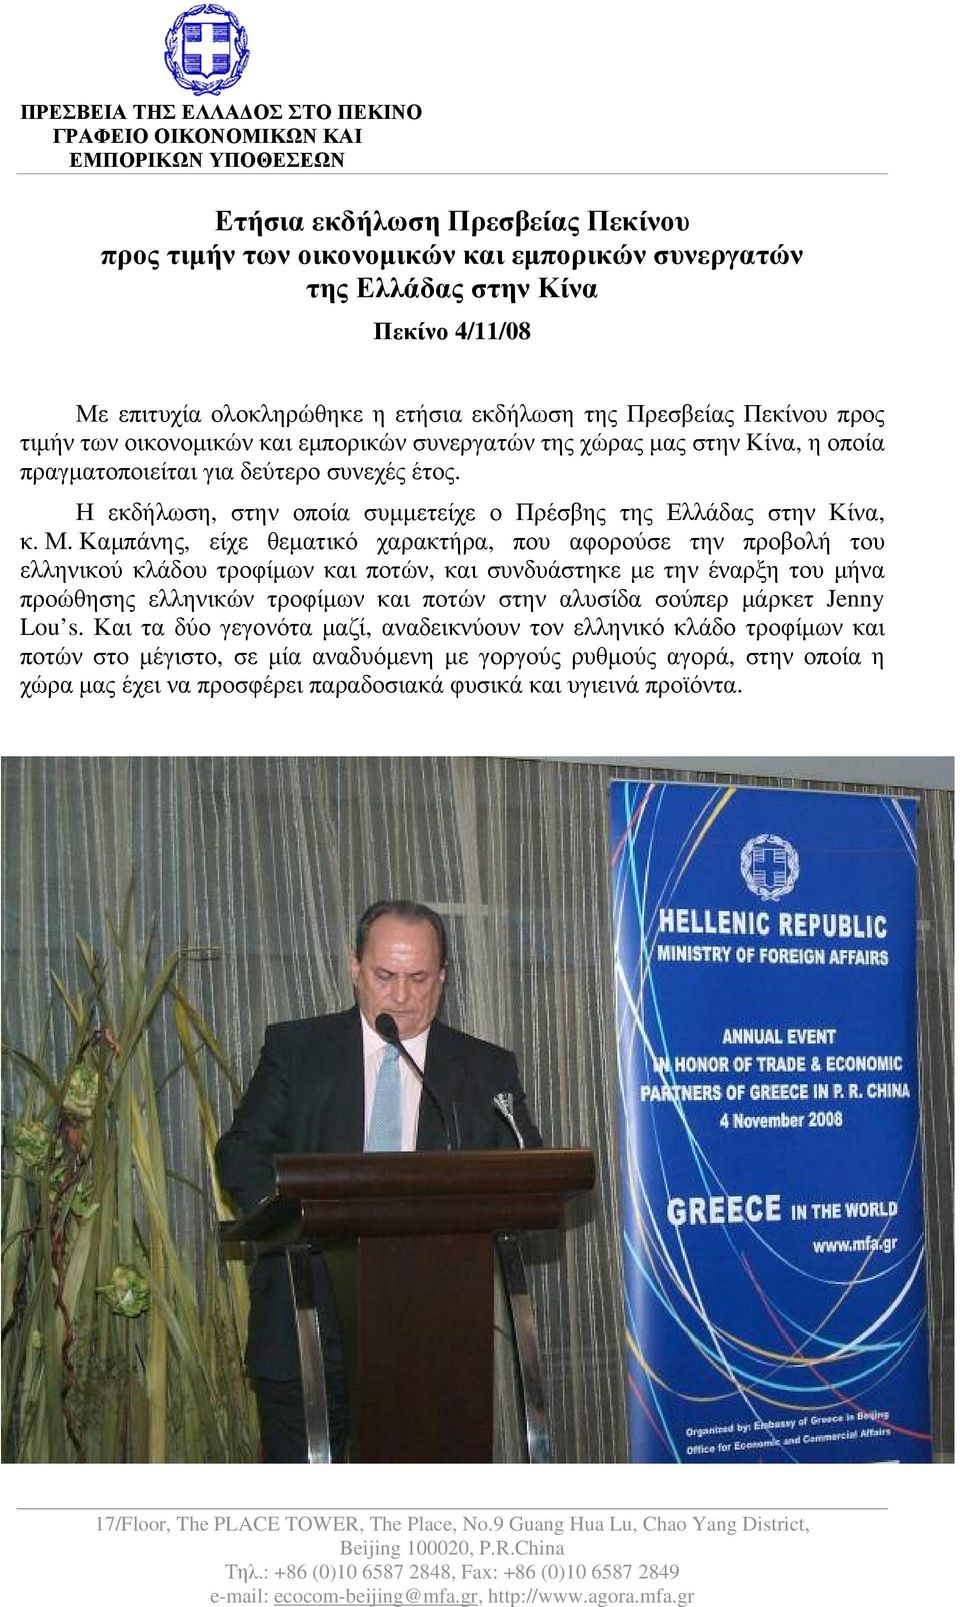 Η εκδήλωση, στην οποία συμμετείχε ο Πρέσβης της Ελλάδας στην Κίνα, κ. Μ.